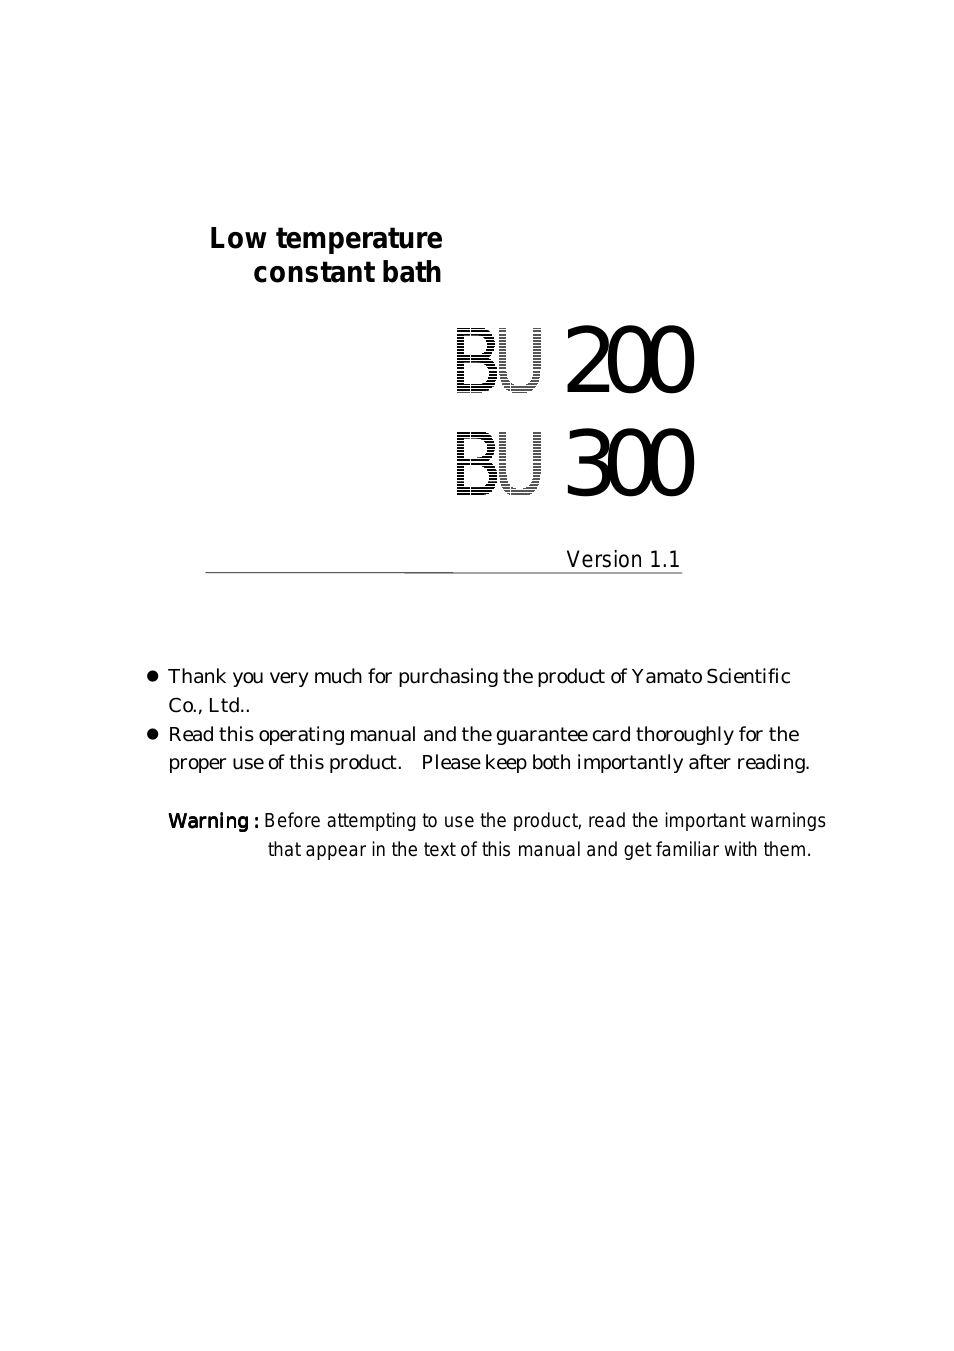 BU200 Low Constant Temperature Water Bath